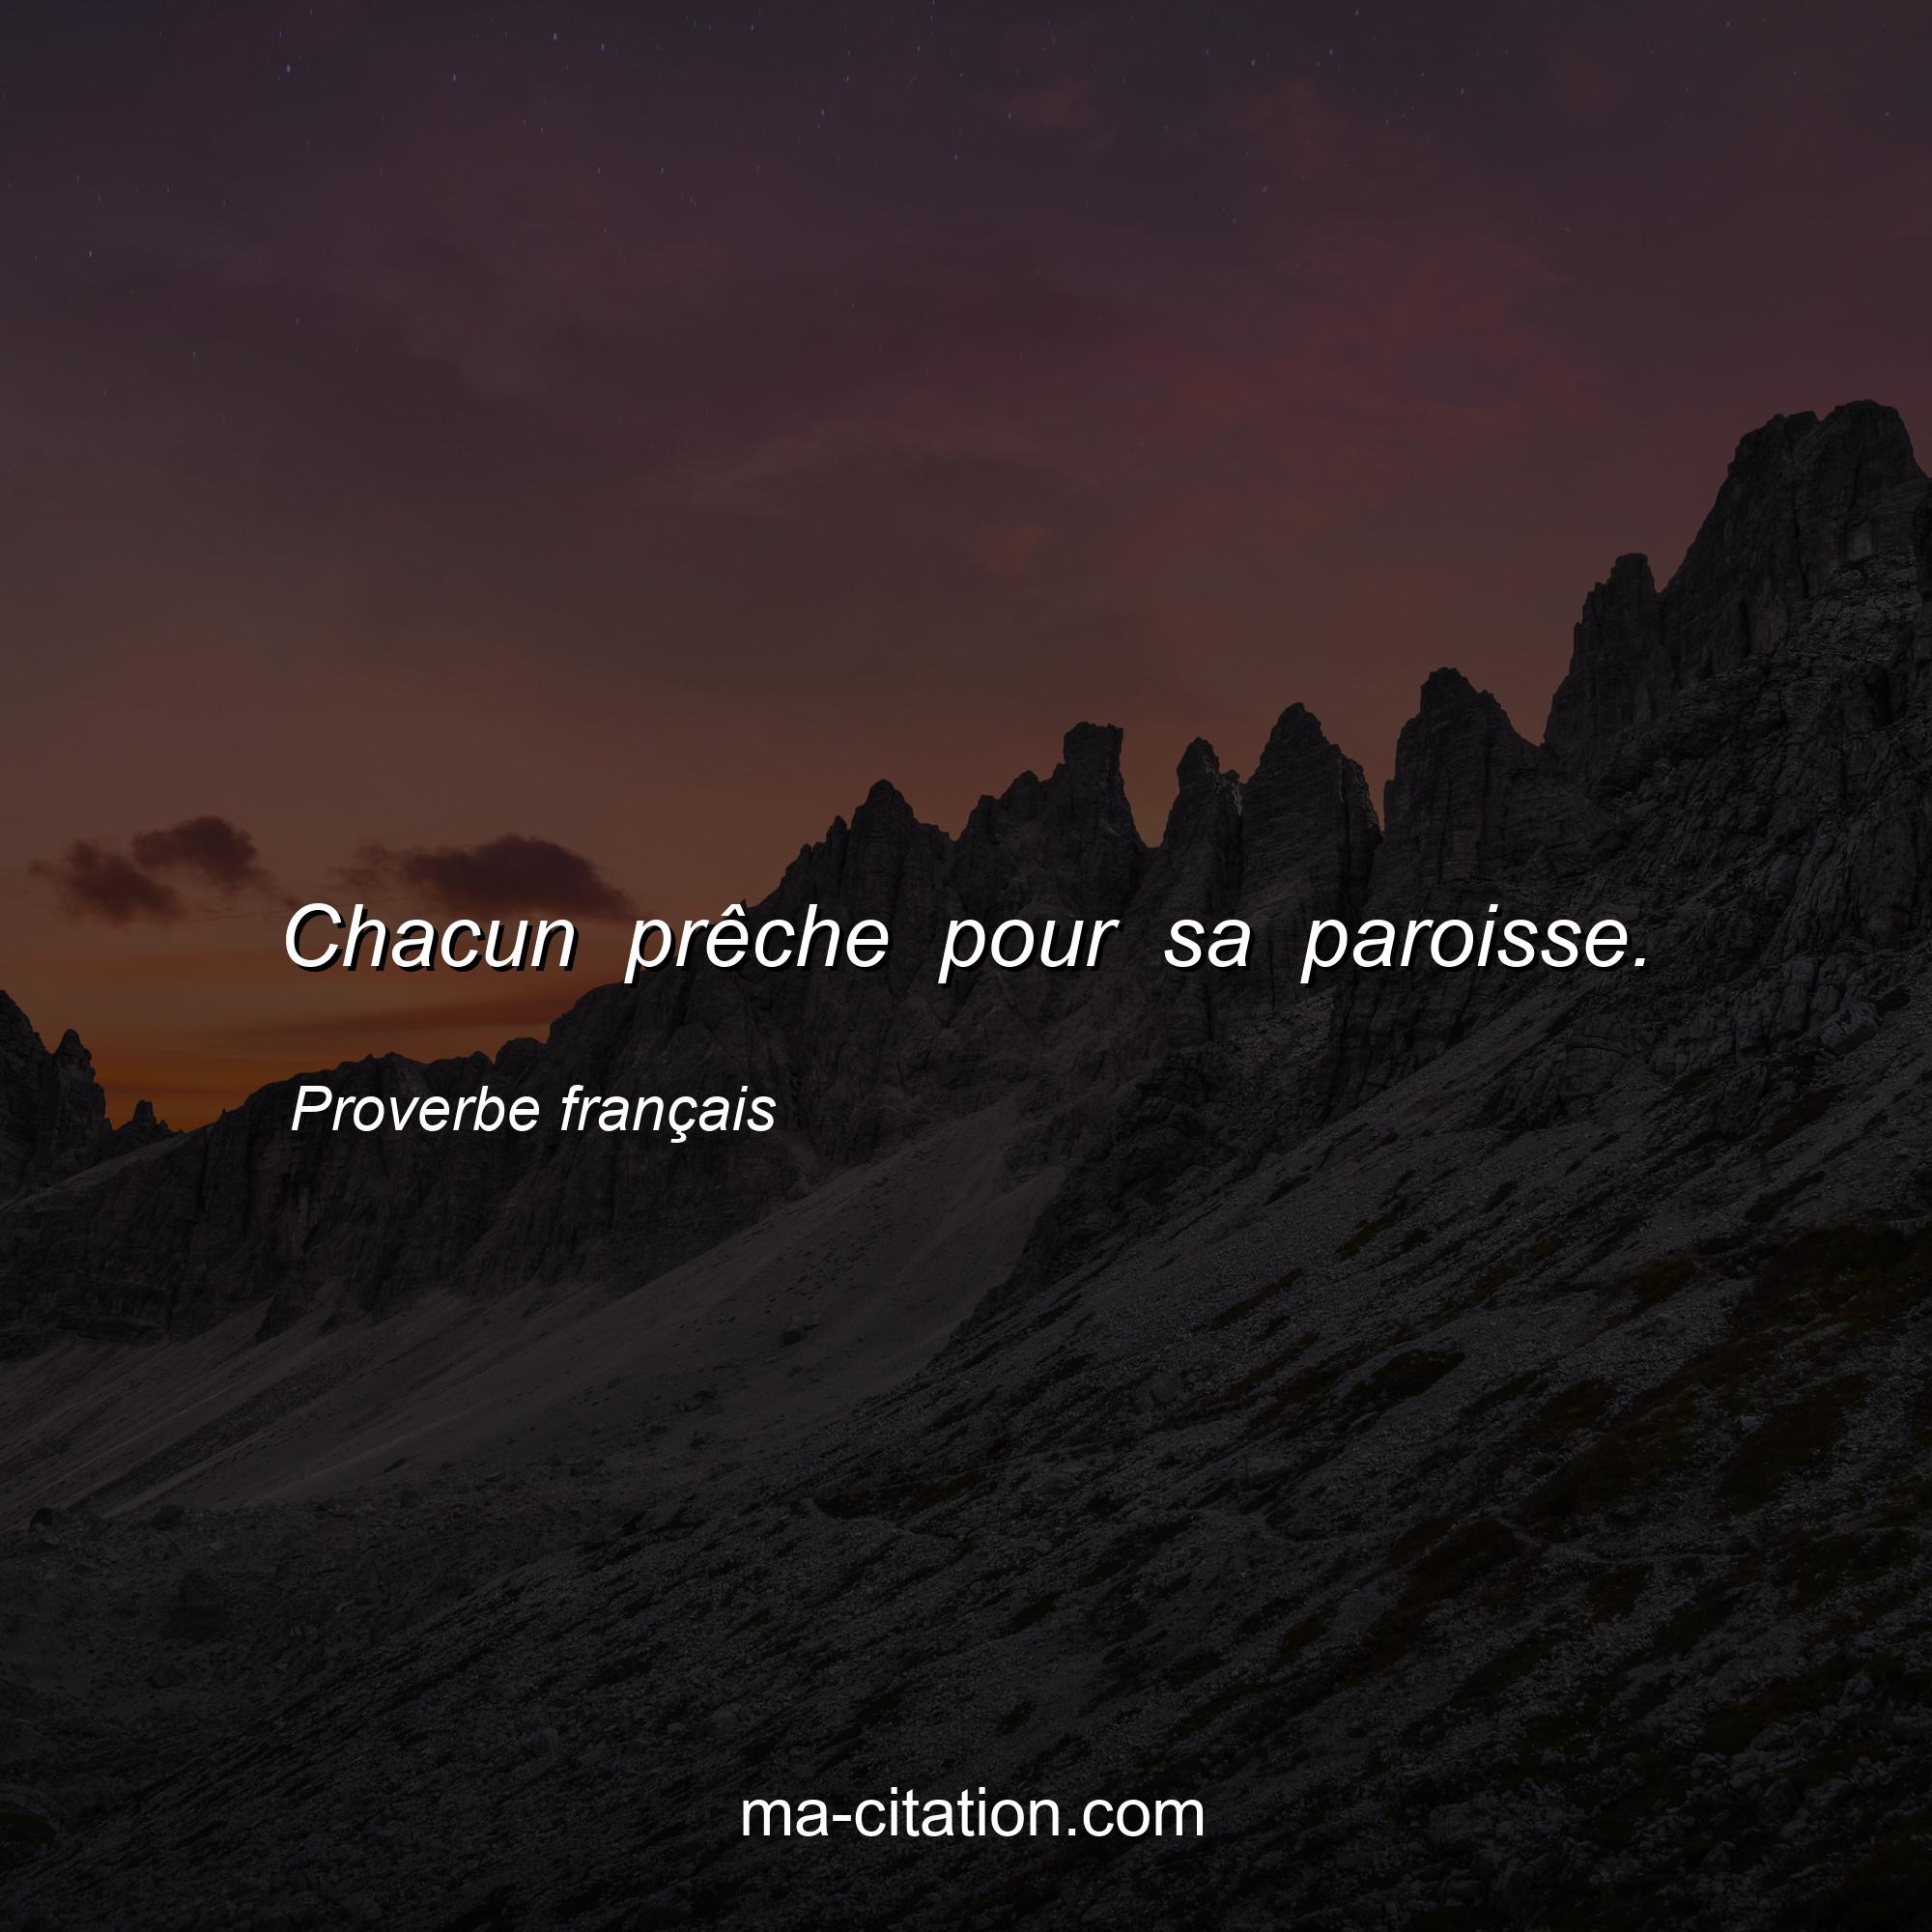 Proverbe français : Chacun prêche pour sa paroisse.